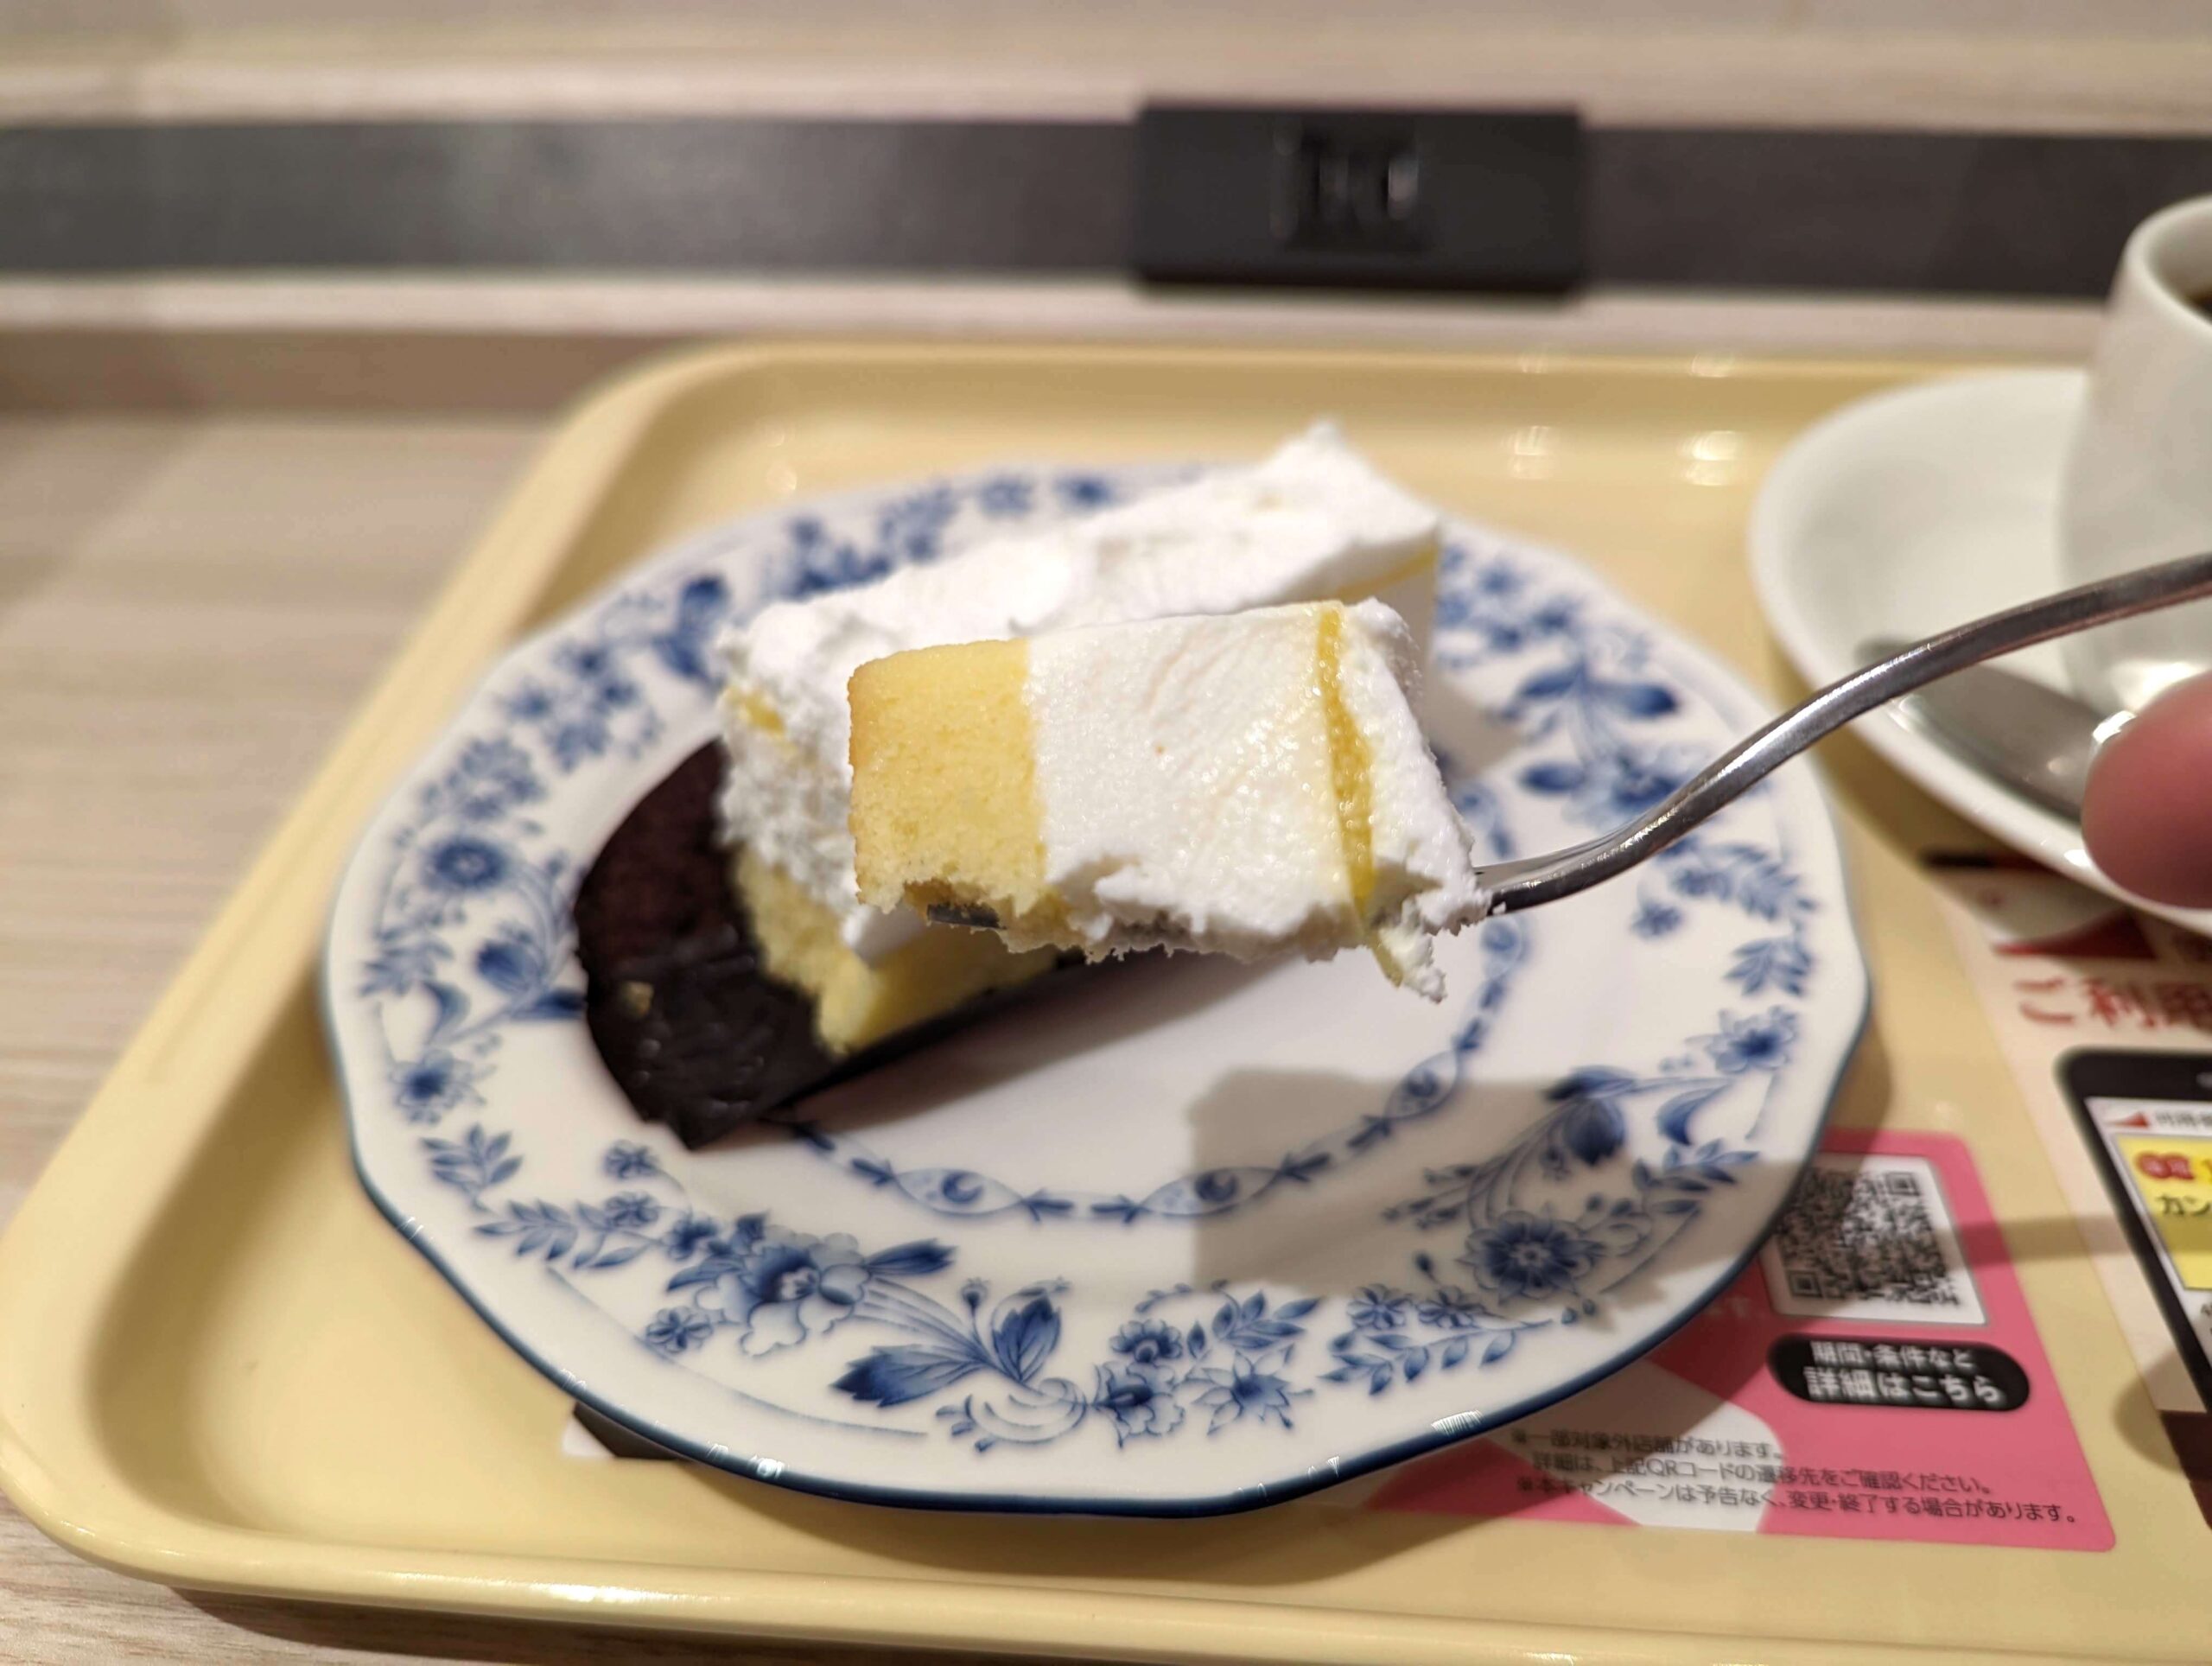 ドトール「レアチーズケーキ レモンソース仕立て」 (1)